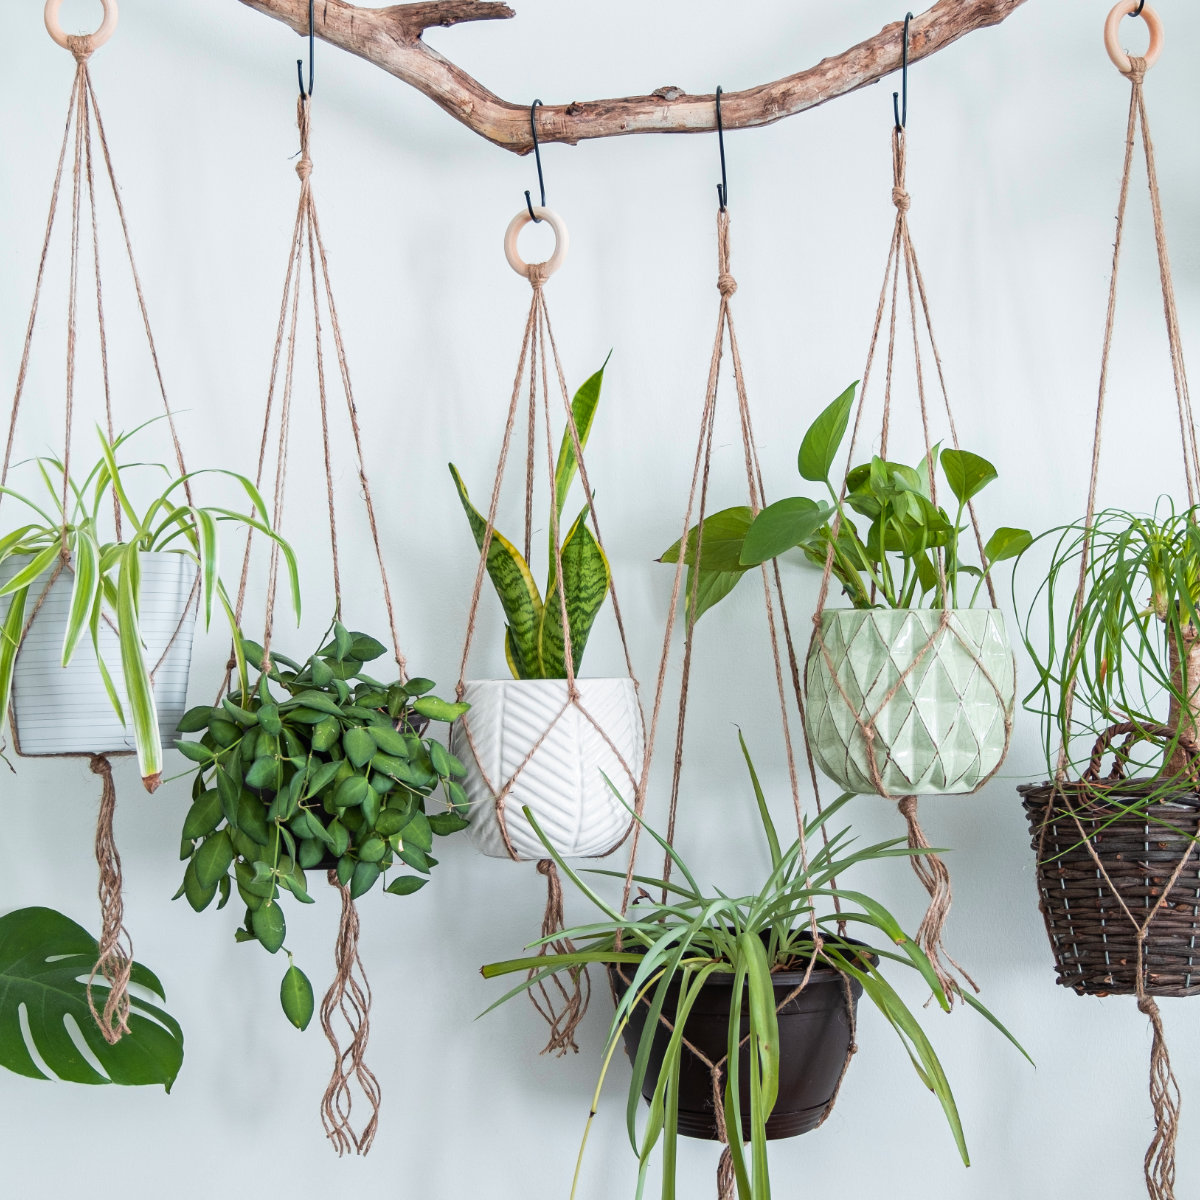 Handgemachte grüne Macrame-Pflanzenhänger mit Topfpflanze hängen